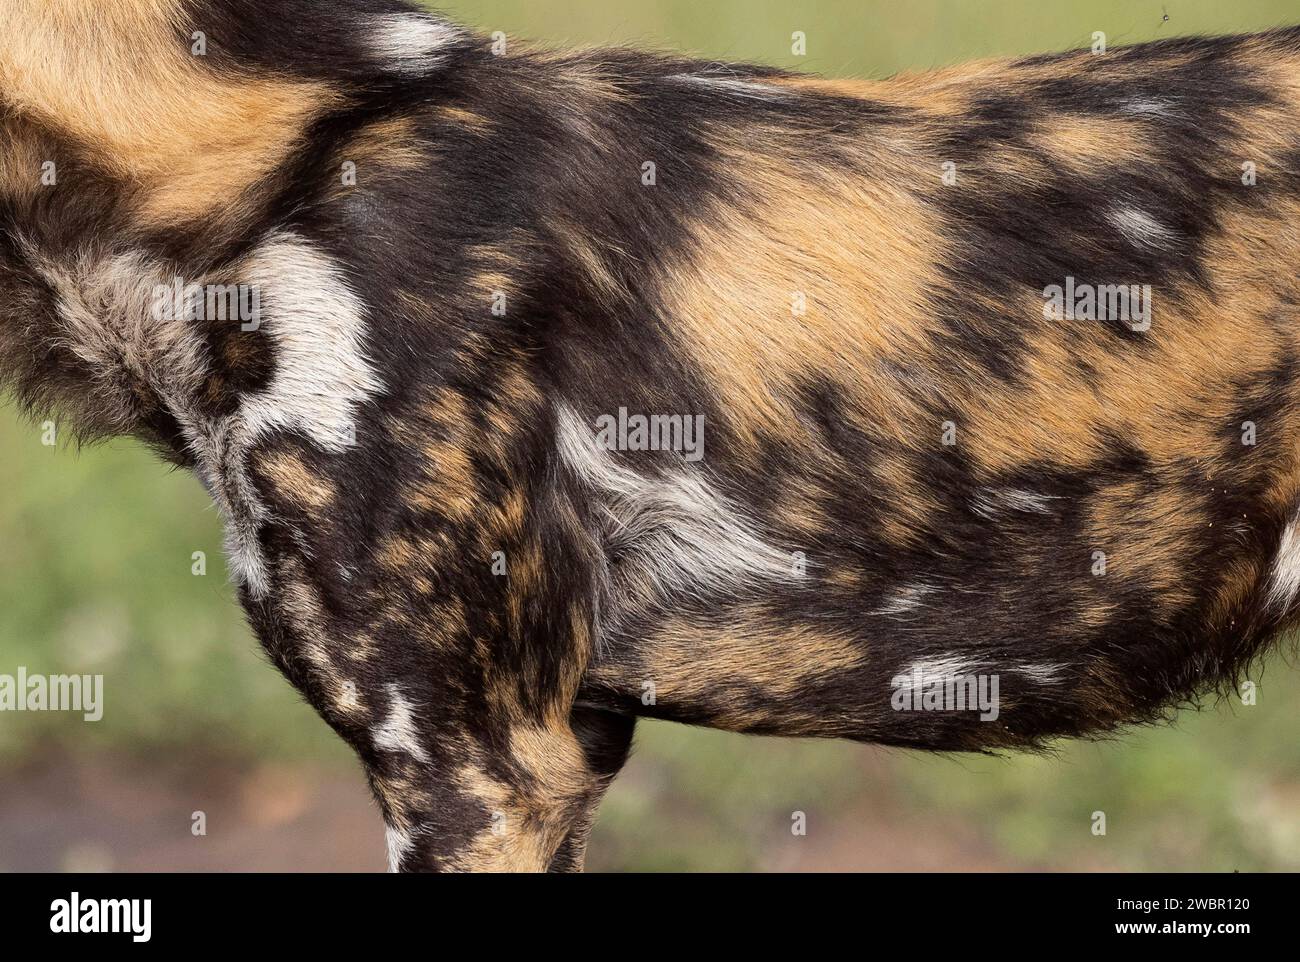 Vue rapprochée du flanc et de l'épaule d'un chien sauvage africain (Lycaon pictus) montrant des marques typiques sur la fourrure Banque D'Images